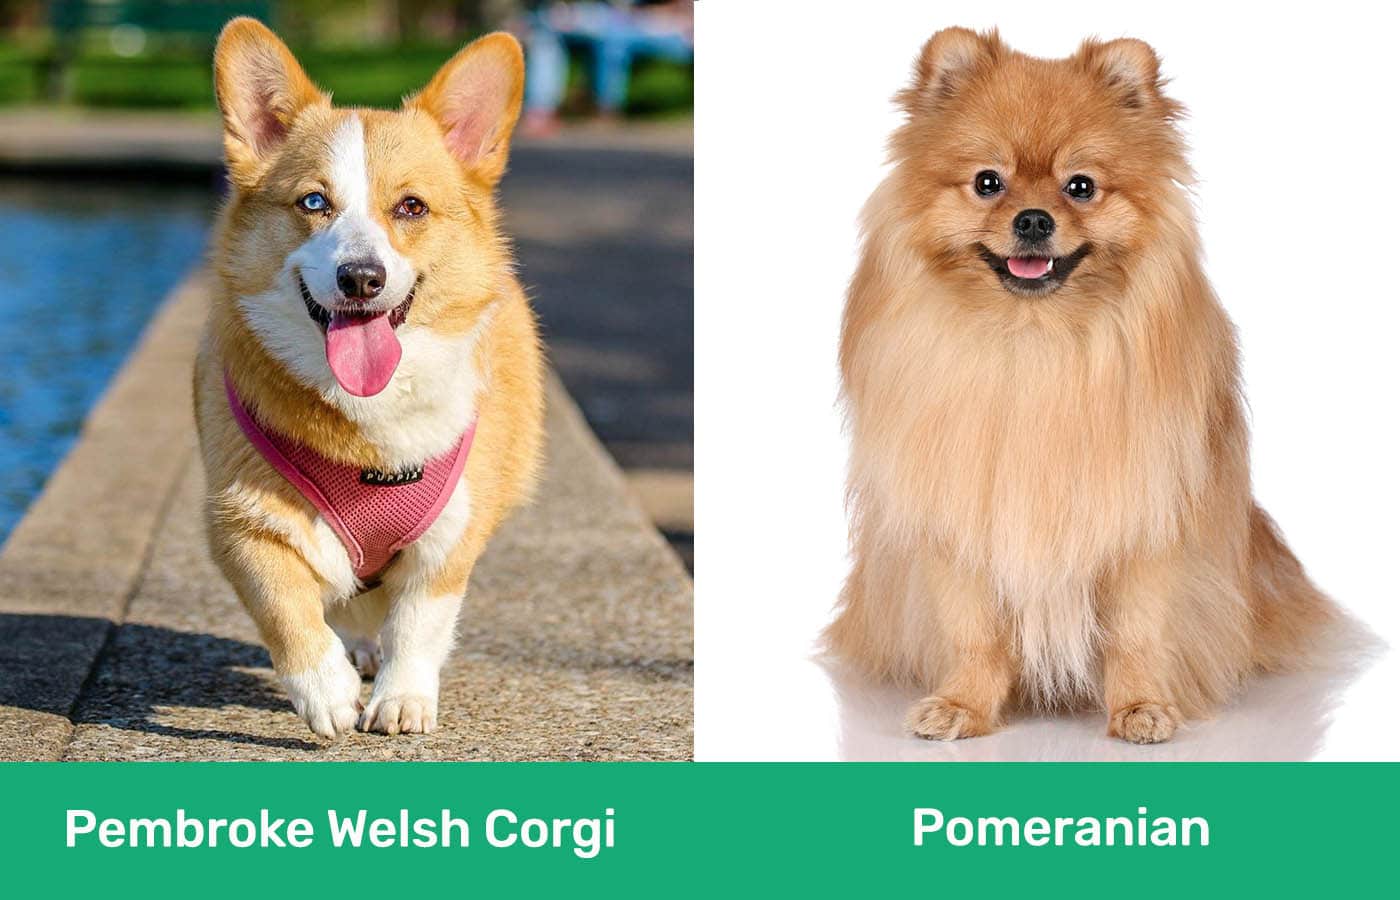 Pembroke Welsh Corgi vs Pomeranian side by side